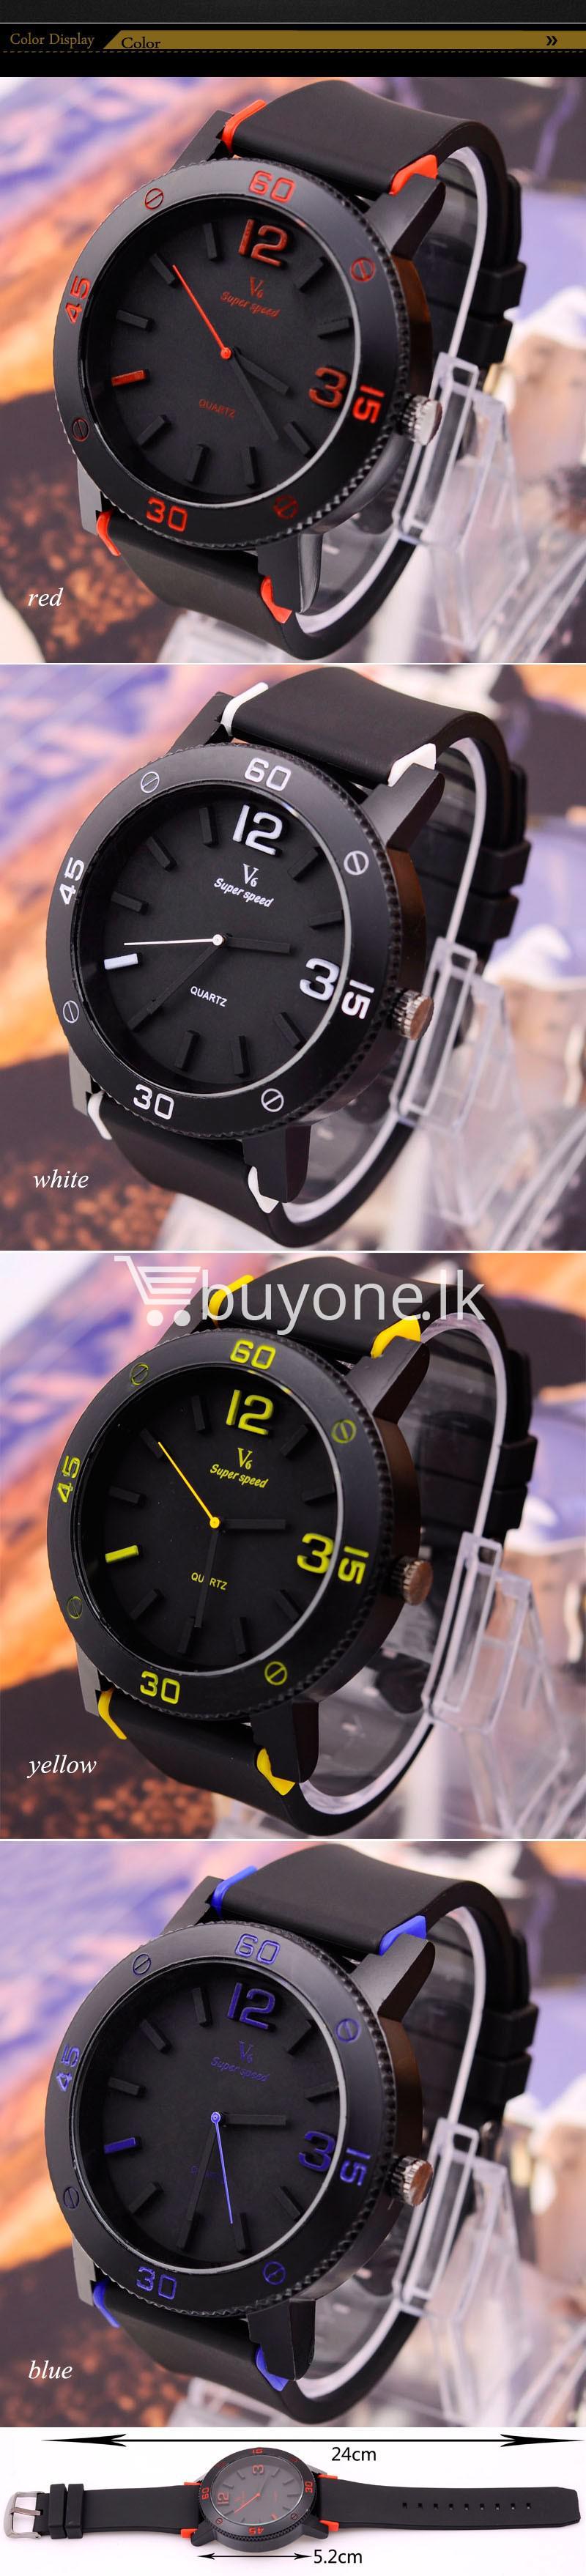 v6 brand fashion quartz sports watches men watches special best offer buy one lk sri lanka 24902 - V6 Brand Fashion Quartz Sports Watches